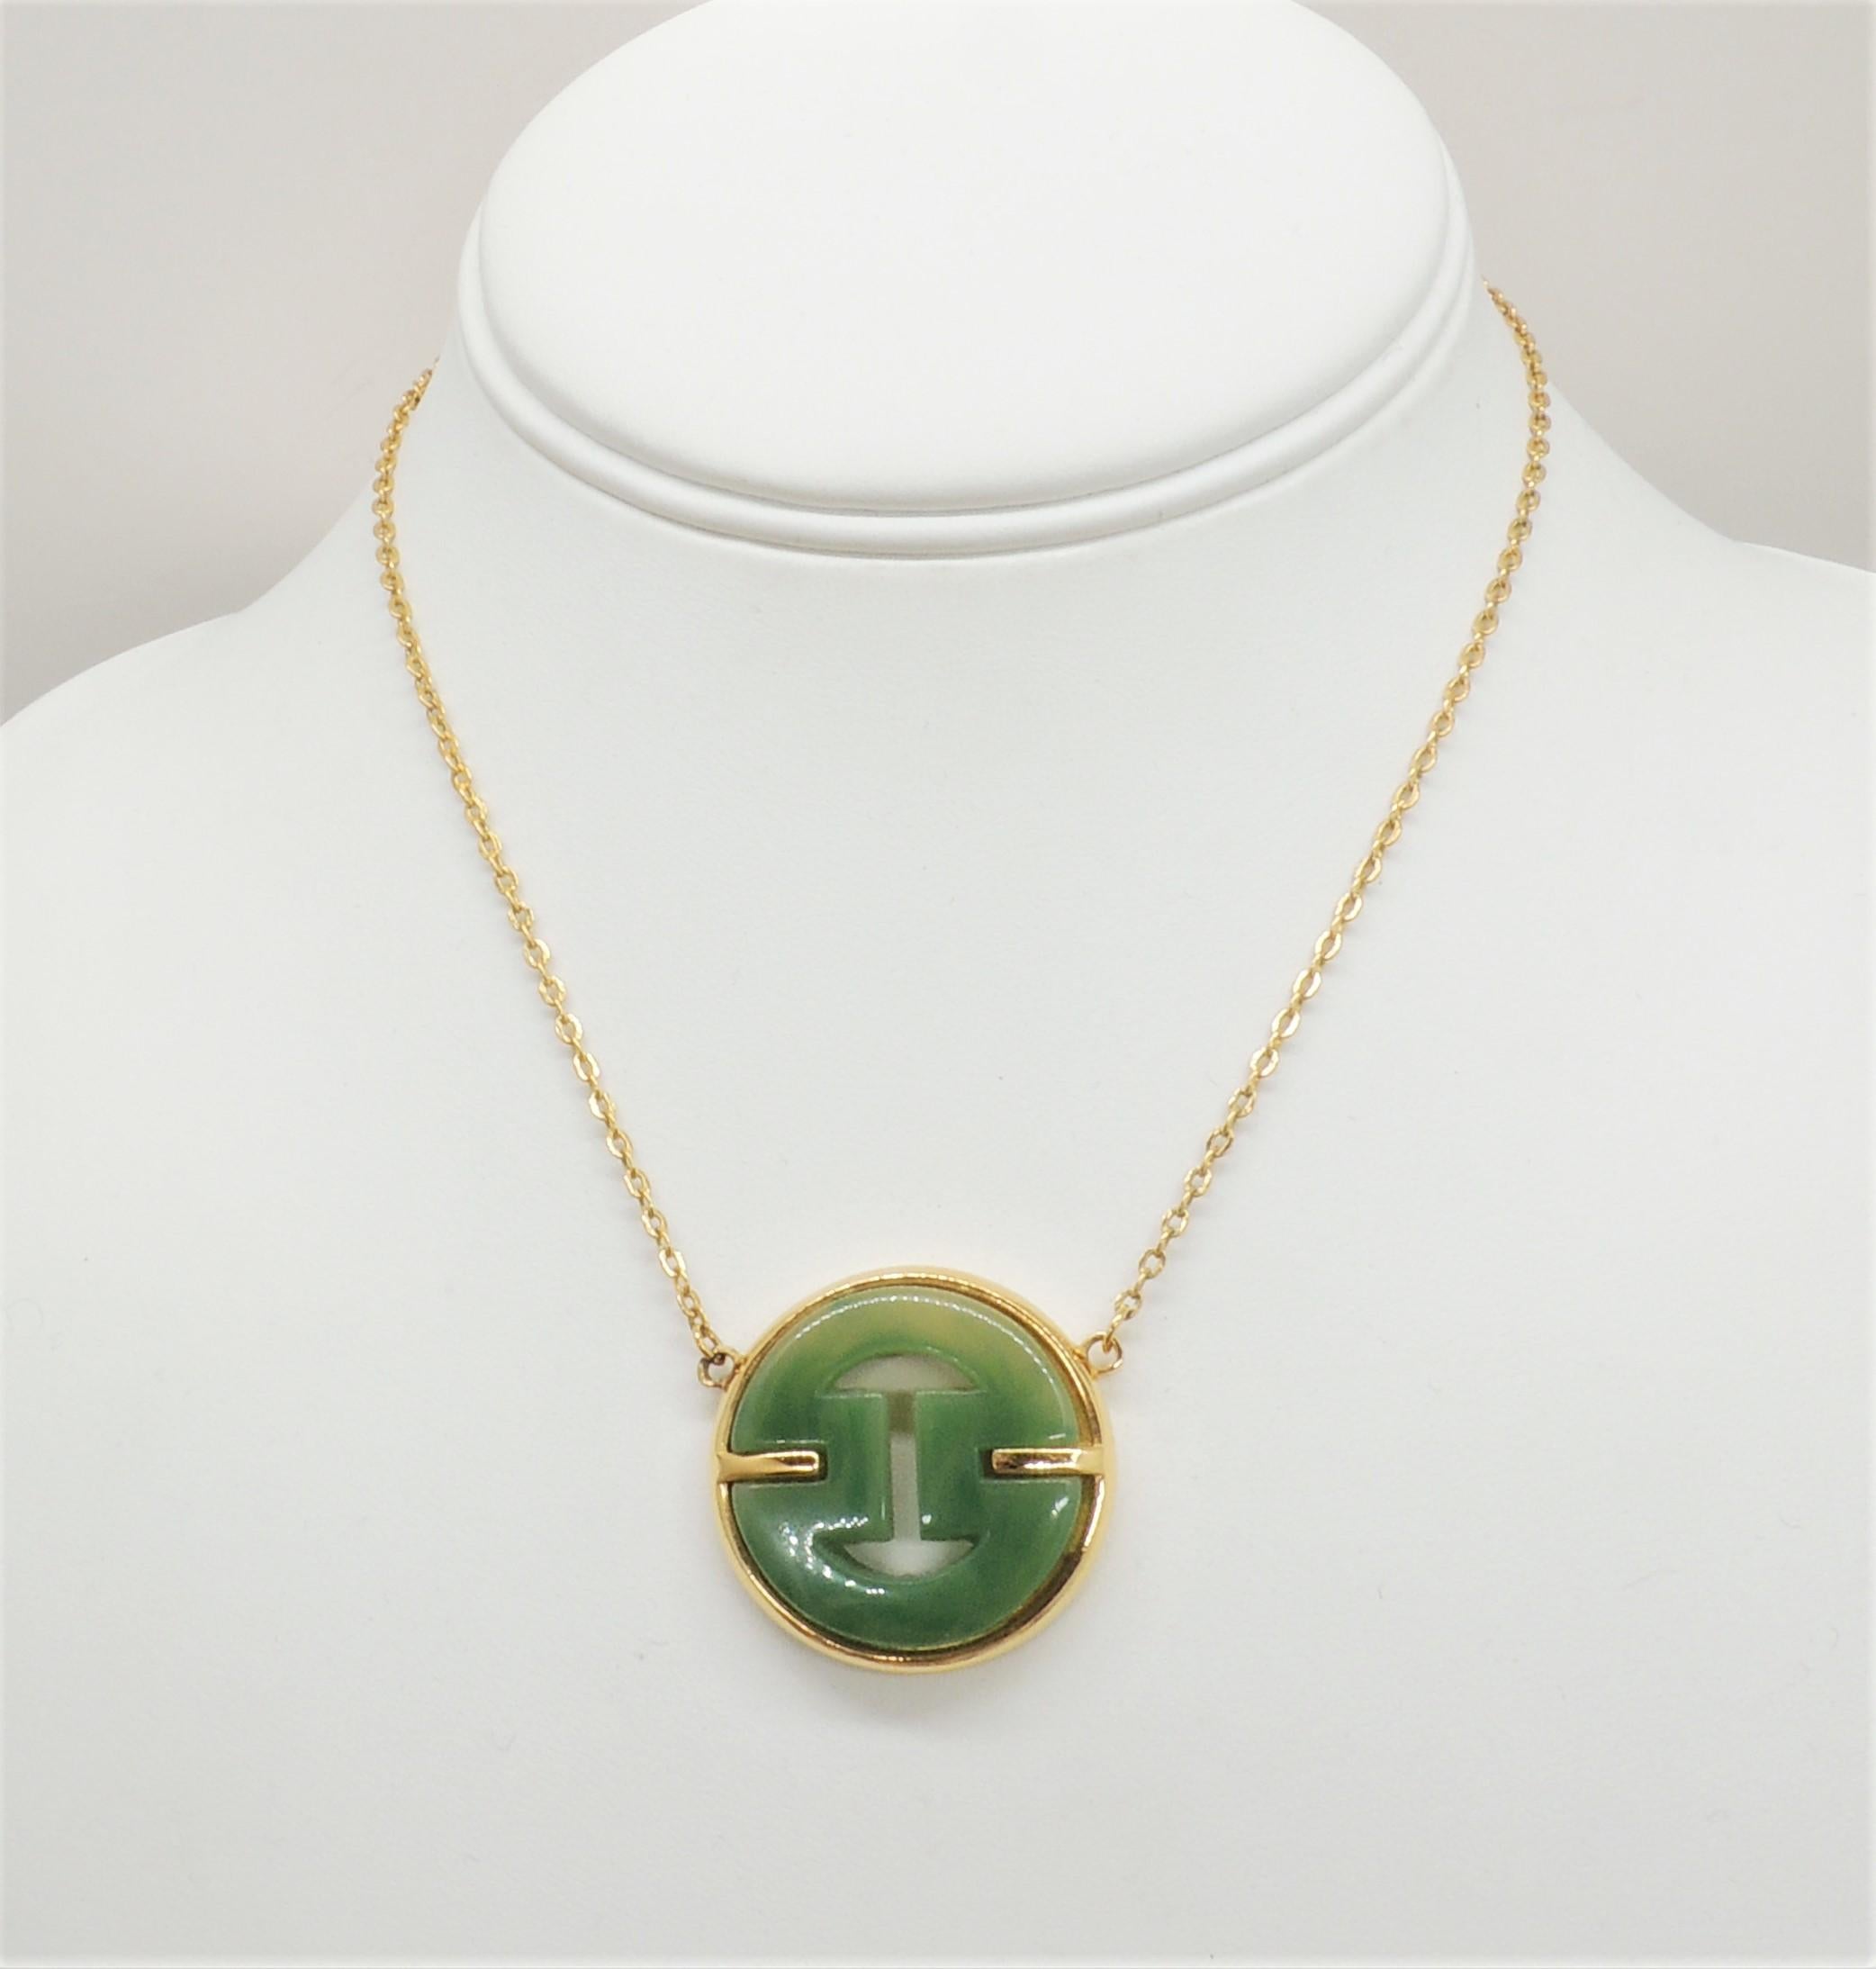 Goldfarbene, asiatisch inspirierte Halskette mit Anhängern aus Faux-Jade und Federringverschluss. Gekennzeichnet mit 